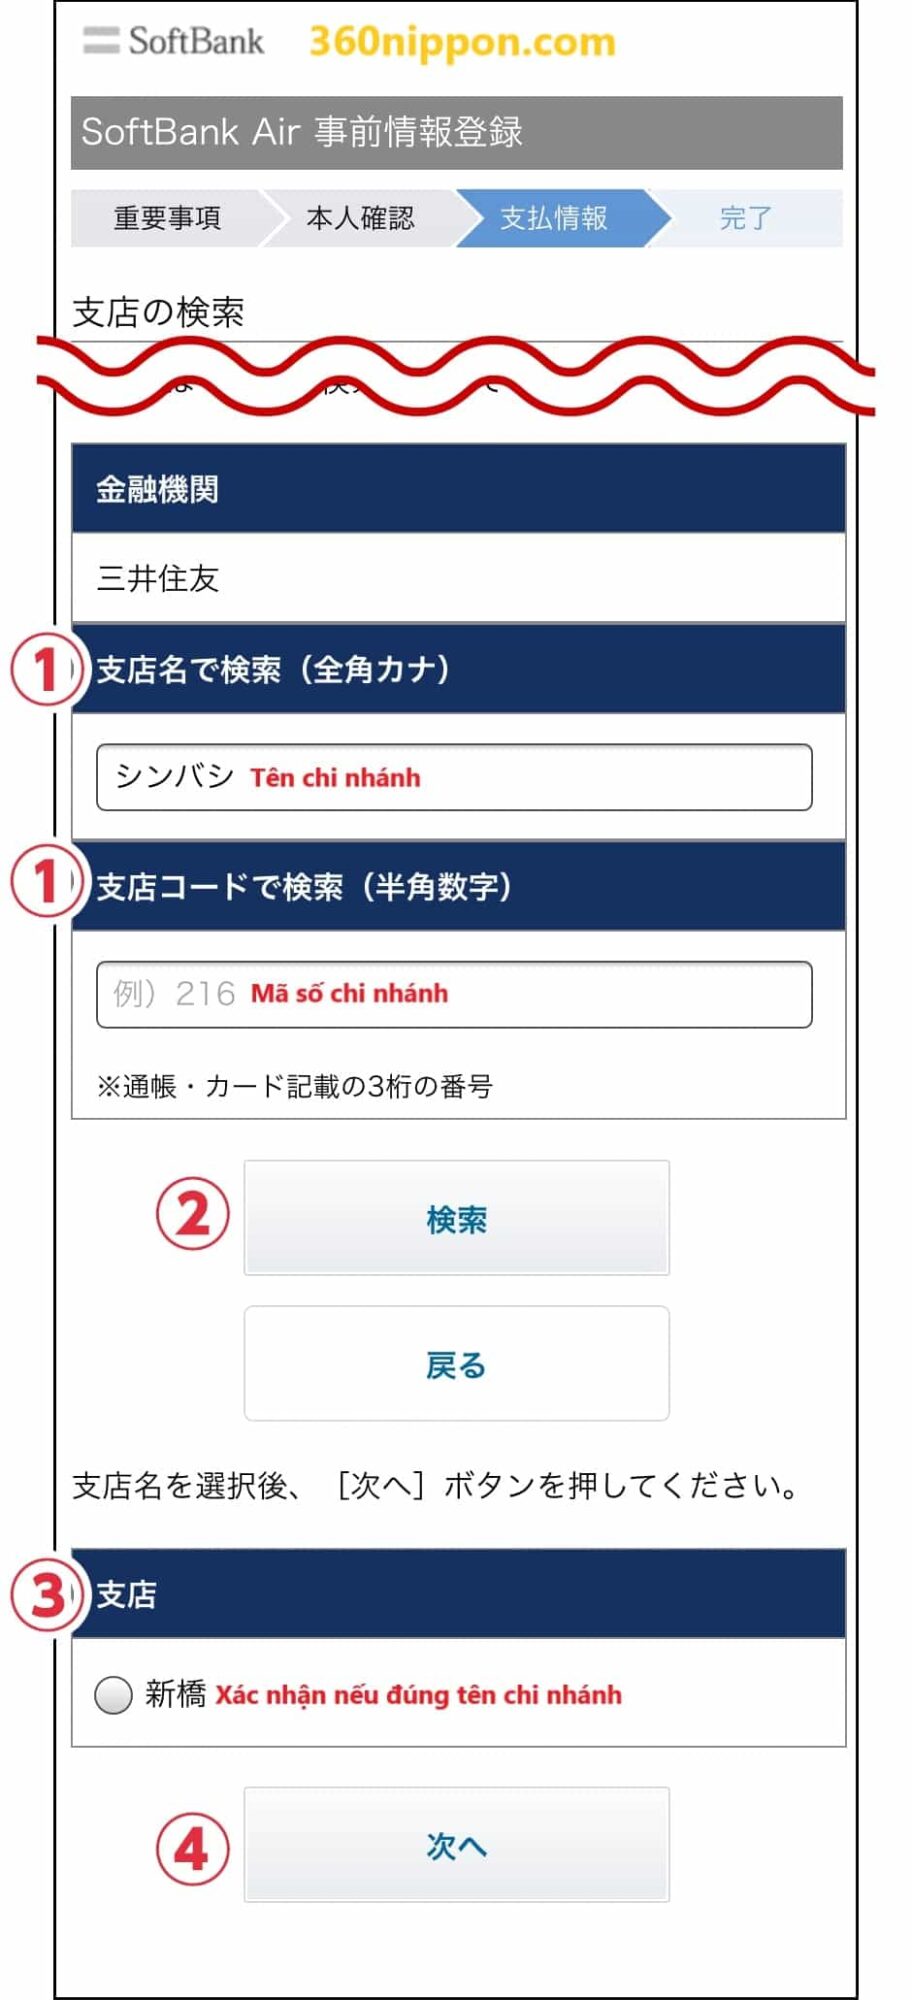 Hướng dẫn cách tự đăng ký wifi cố định softbank ở Nhật 122